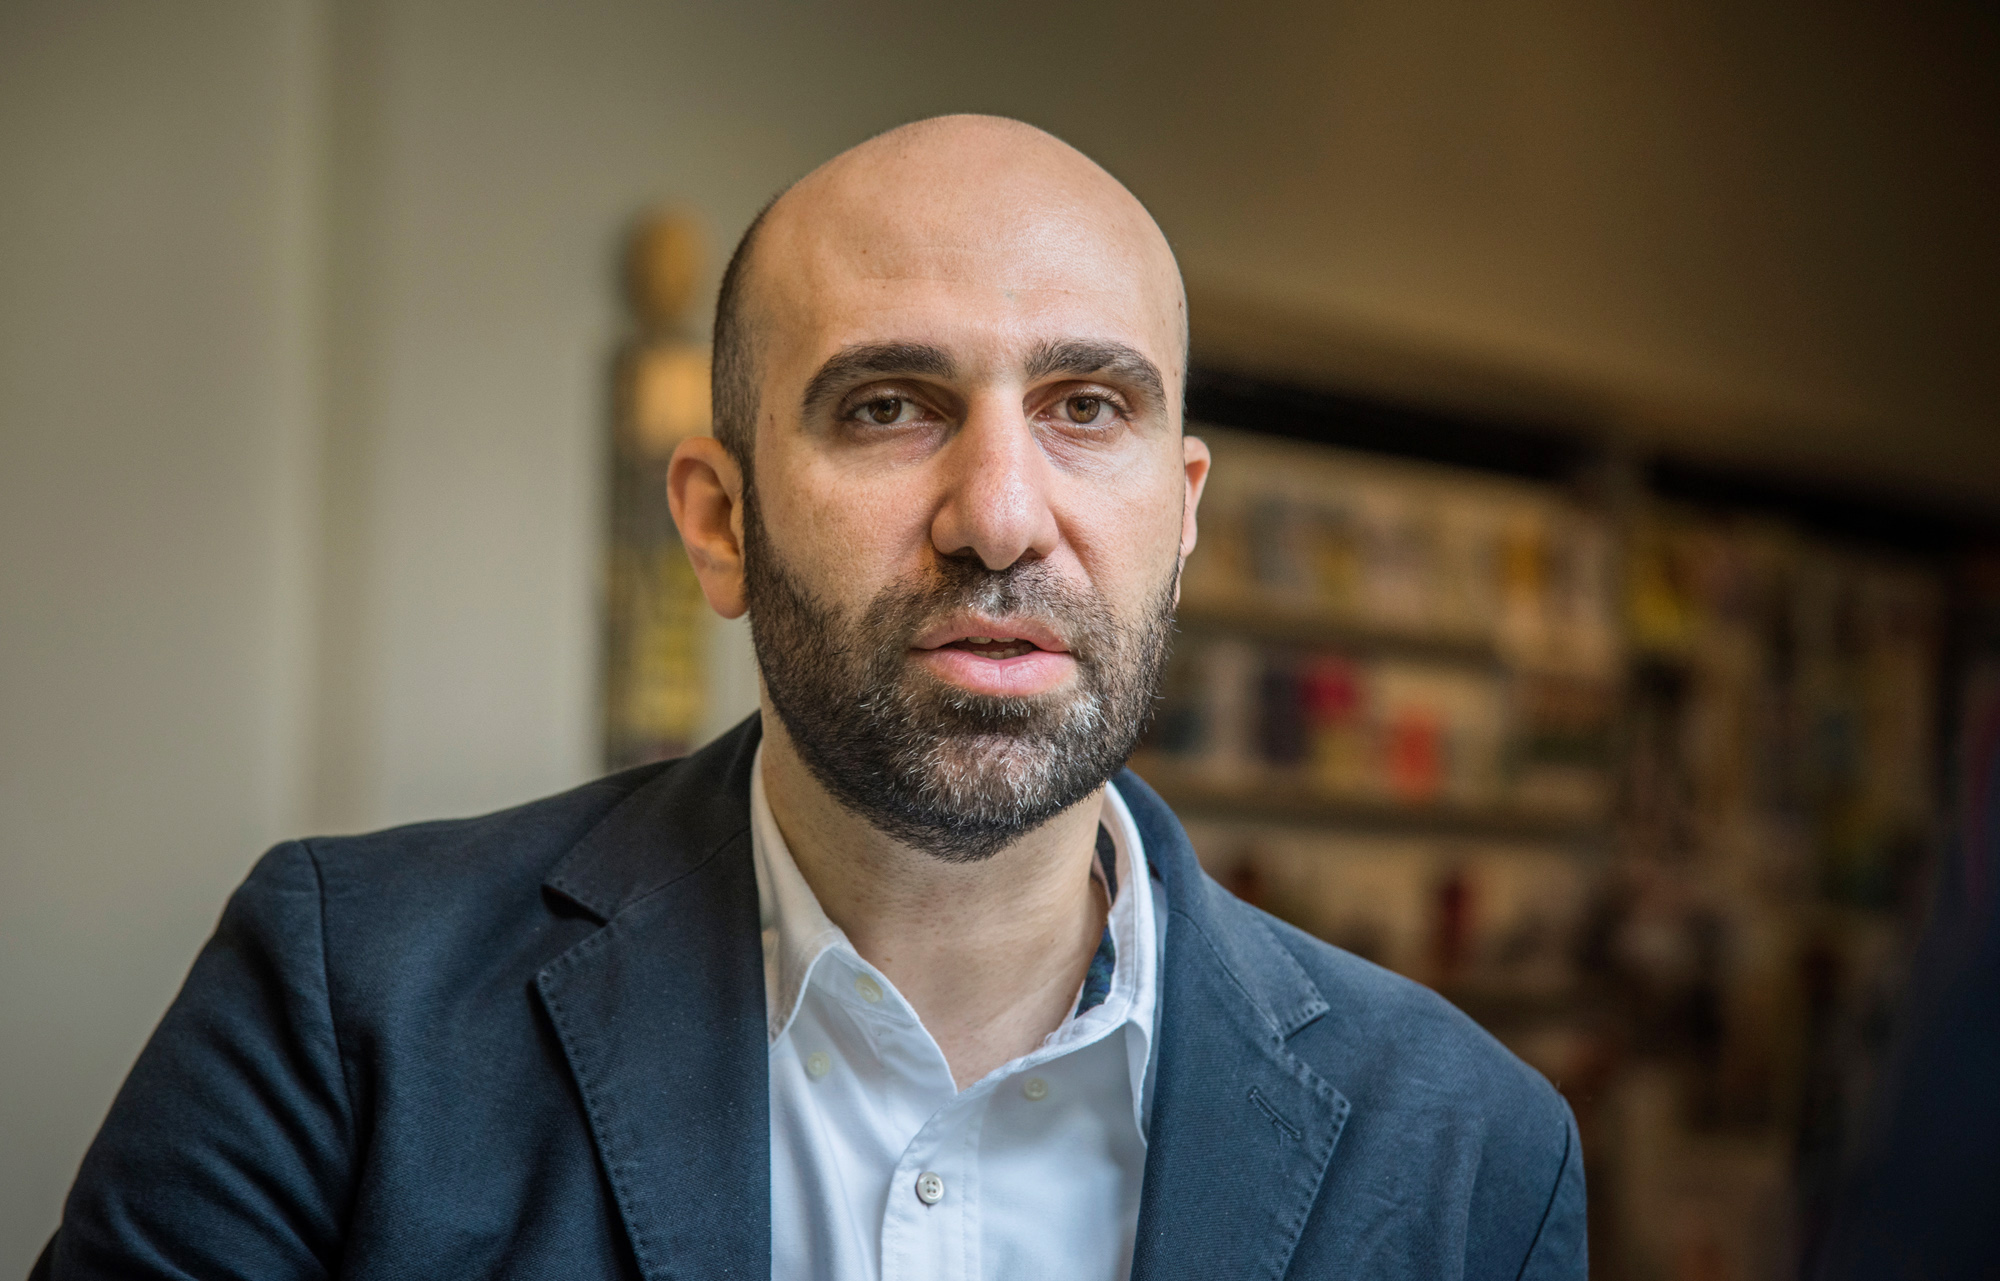 Der arabisch-israelische Psychologe Ahmad Mansour fordert mehr Extremismus-Prävention an den Schulen.